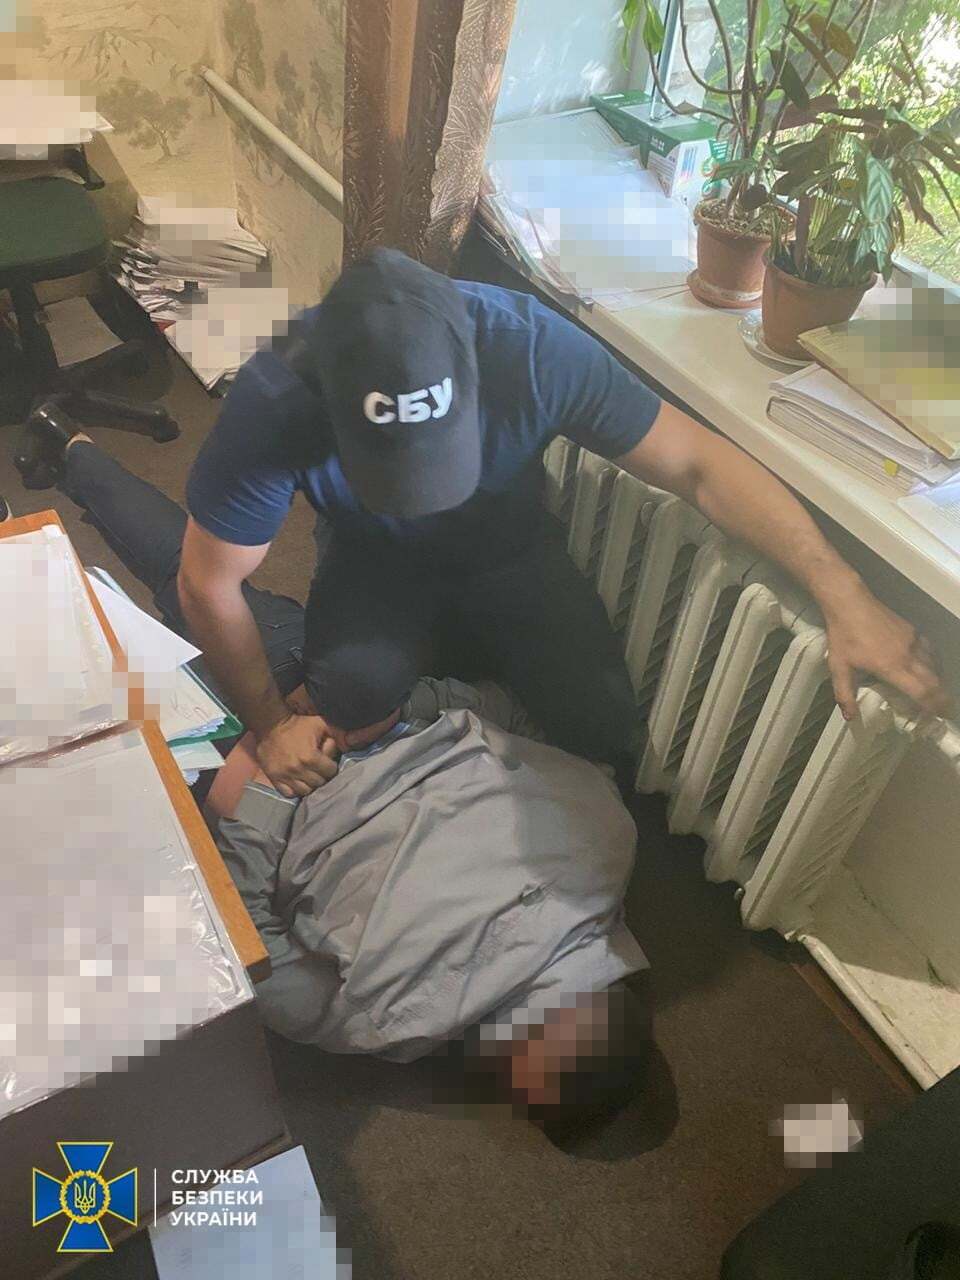 На Дніпропетровщині прокурор, якого спіймали на гарячому, викинув хабар у вікно